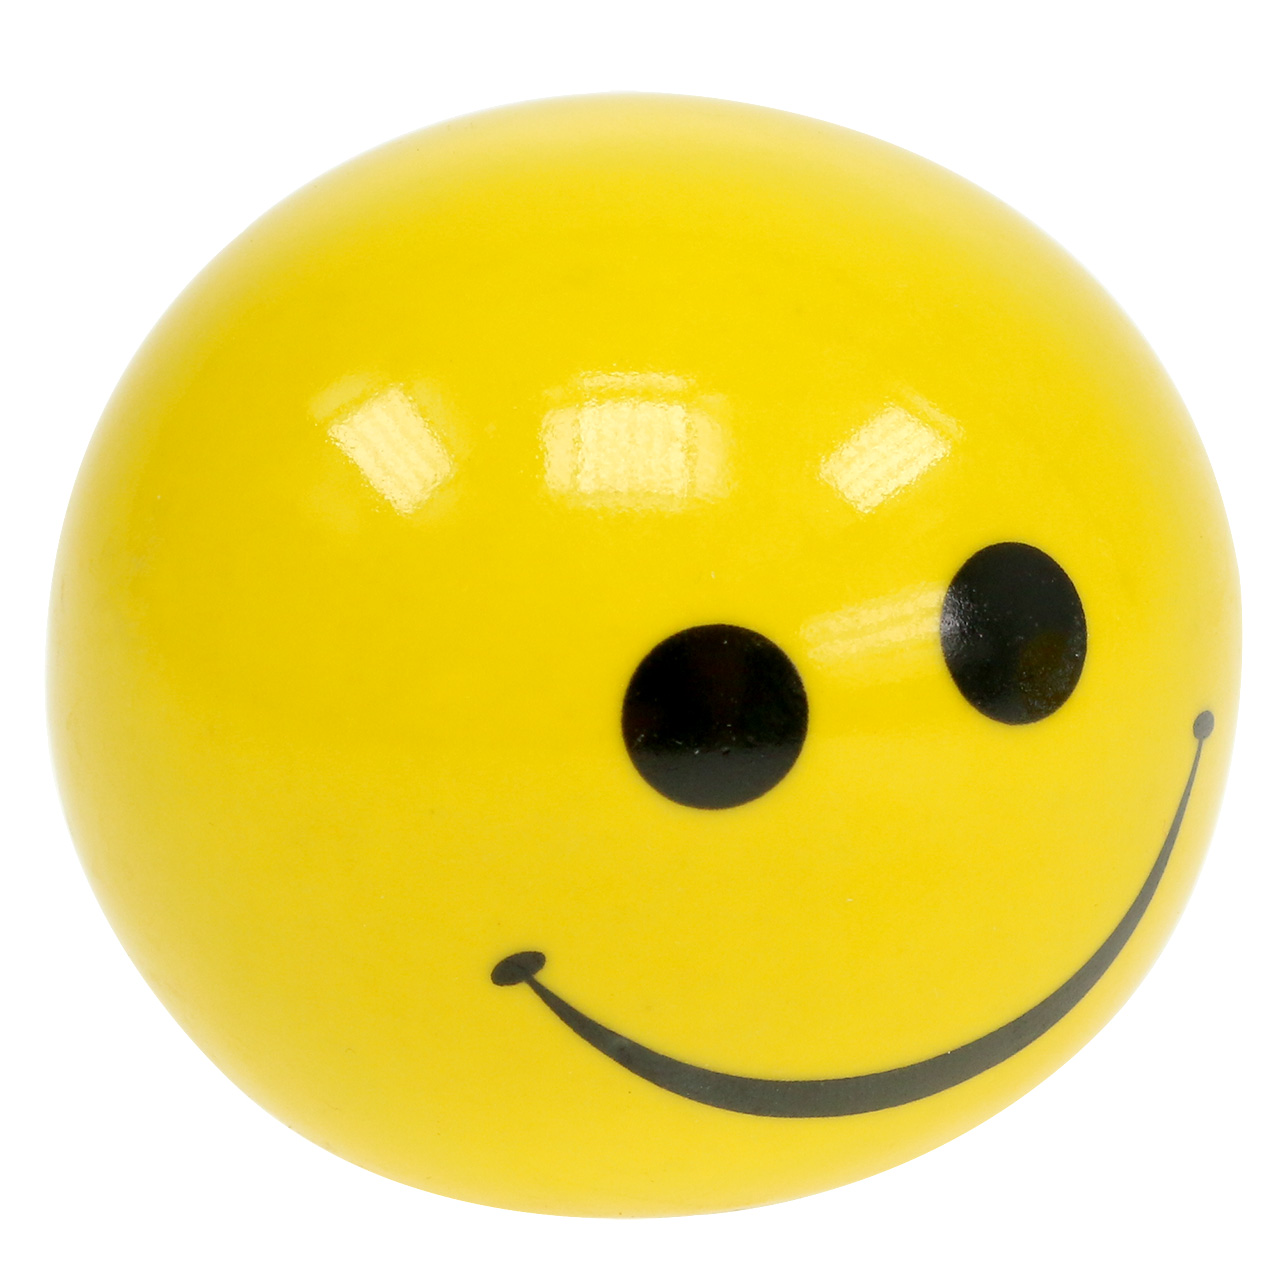 Boule en céramique avec smiley jaune Ø5cm H4.5cm 6pcs